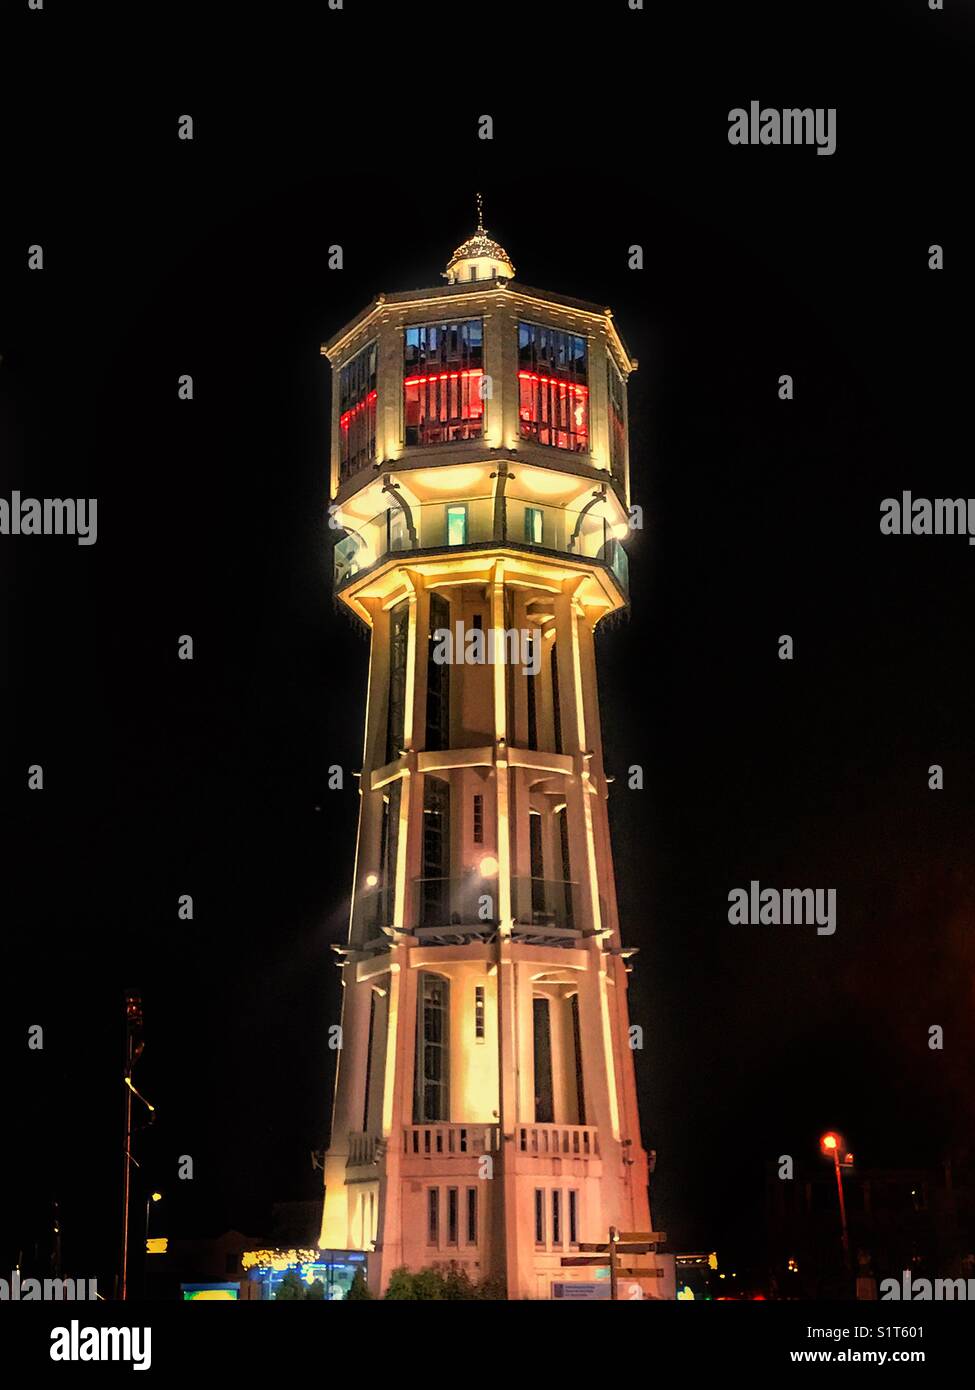 Watertower at night Stock Photo